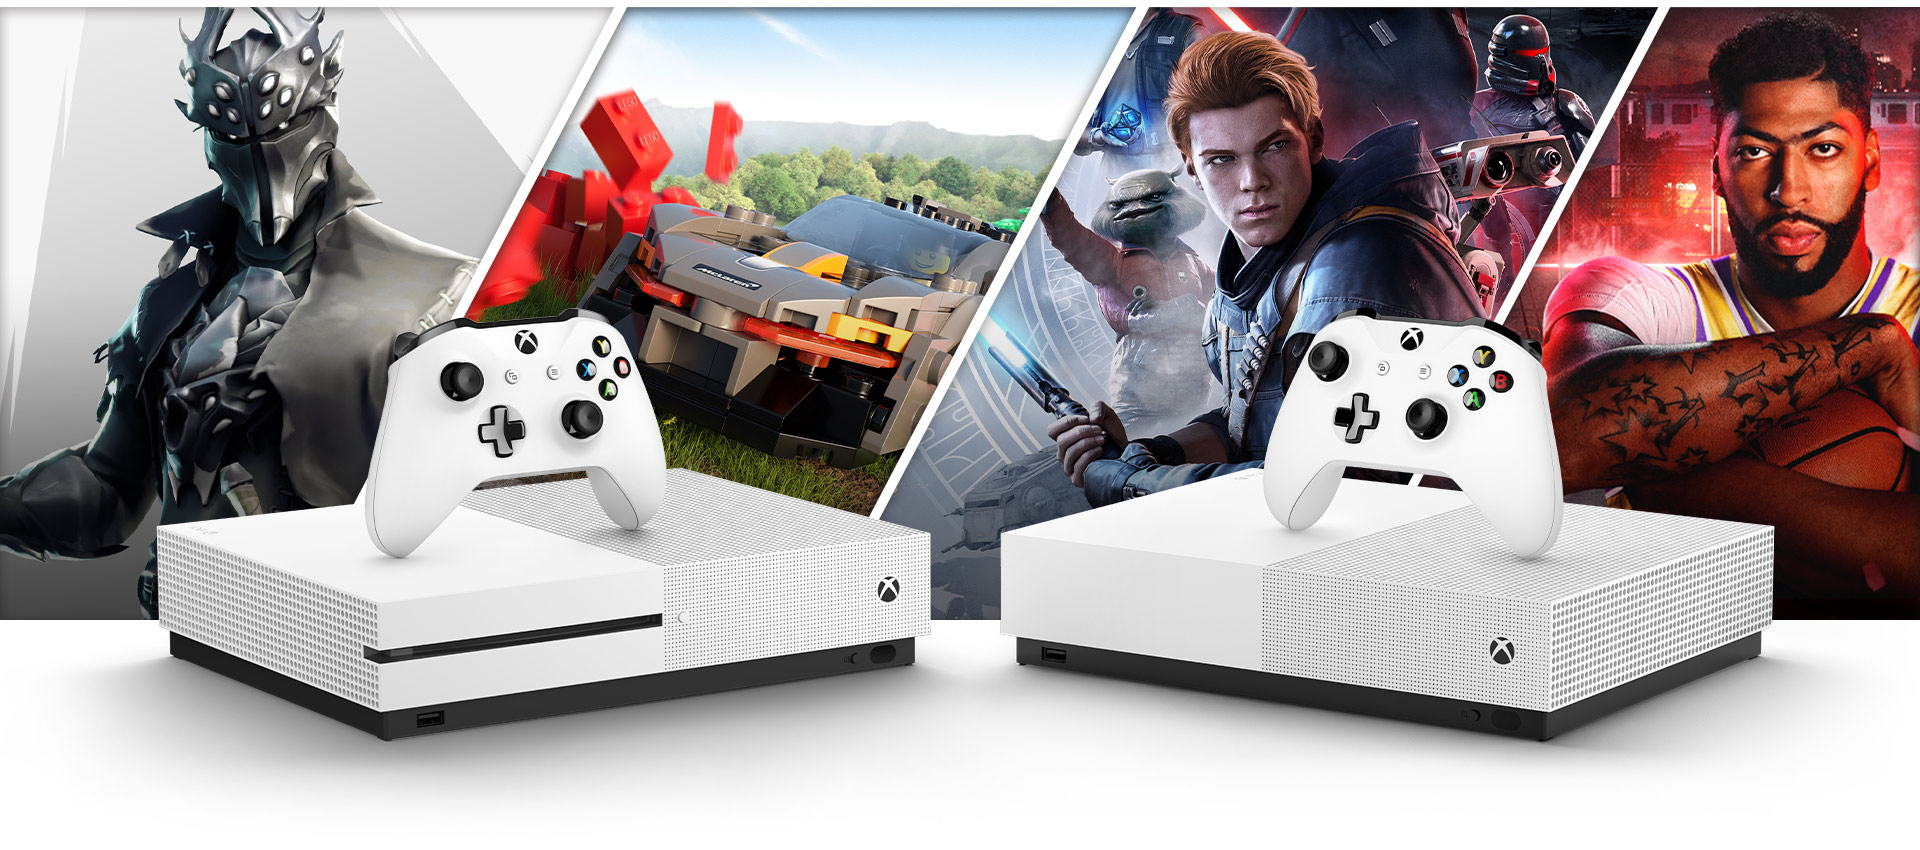 Bilder von Fortnite, Forza Horizon 4, Star Wars Jedi Fallen Order und NBA 2K20 hinter einer Xbox One S und einer Xbox One S - All Digital Edition